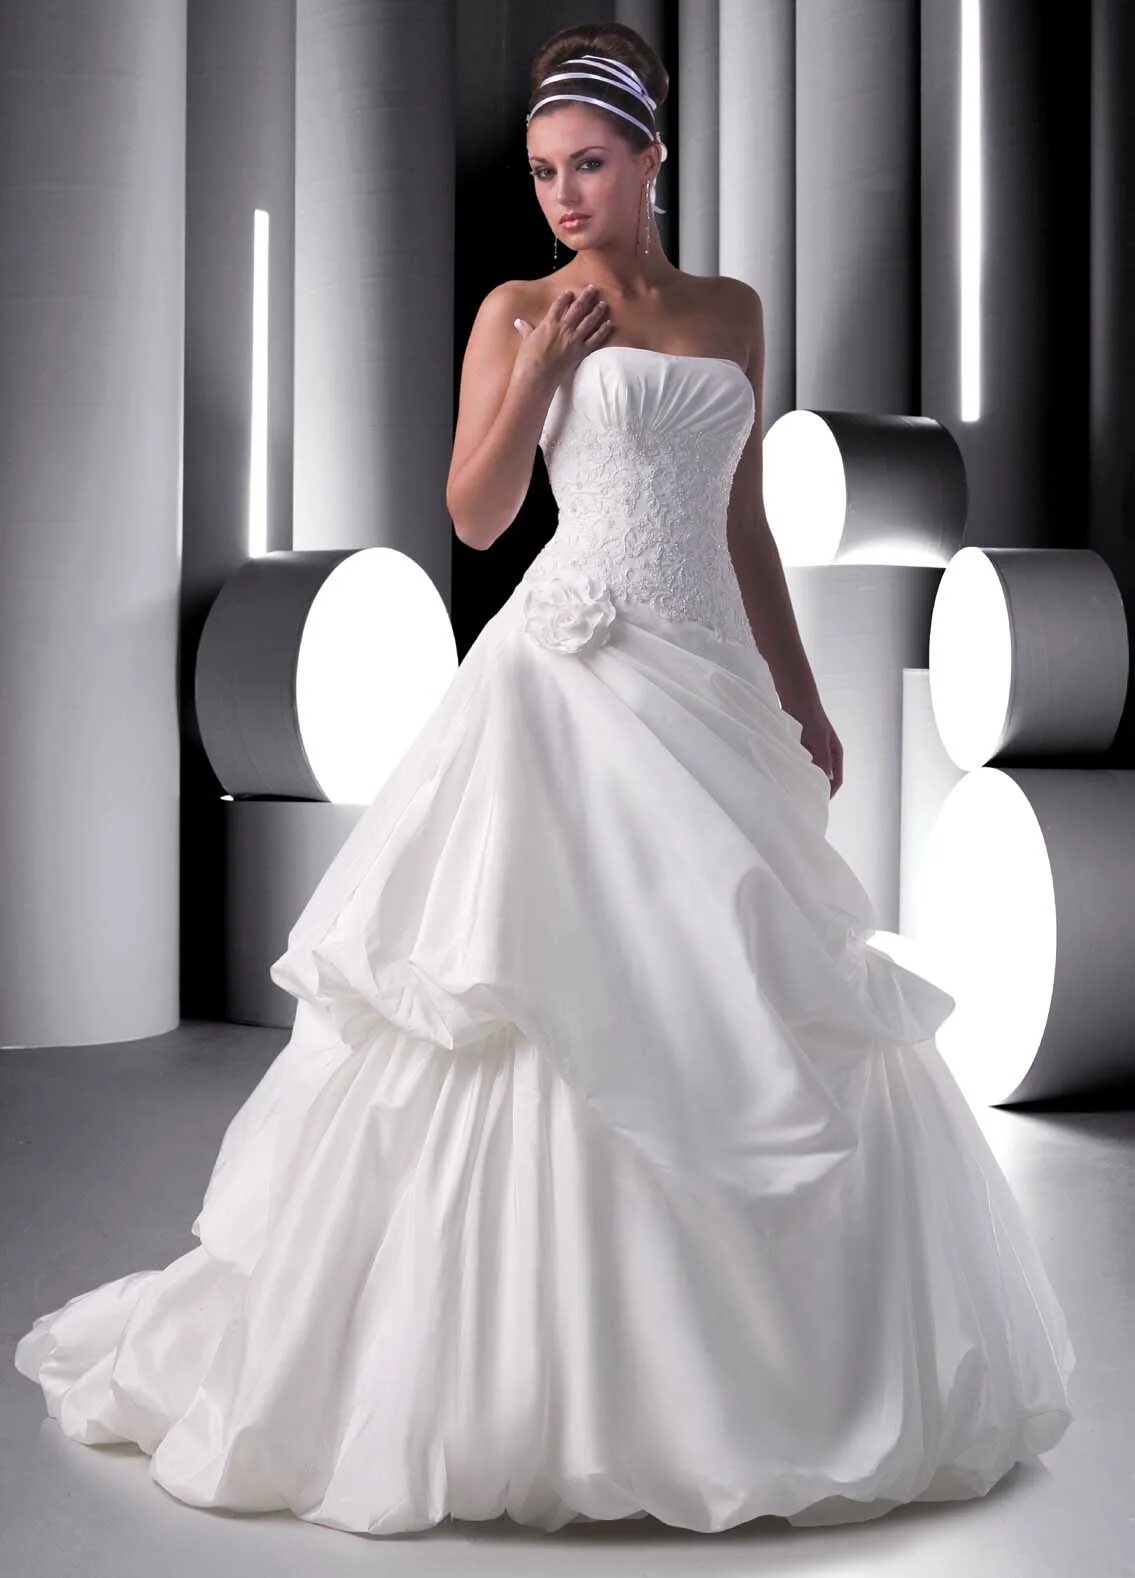 Свадебное платье Crystal Design Soprano. Свадебные платья Каплун. Wedding Gown платья Свадебные.